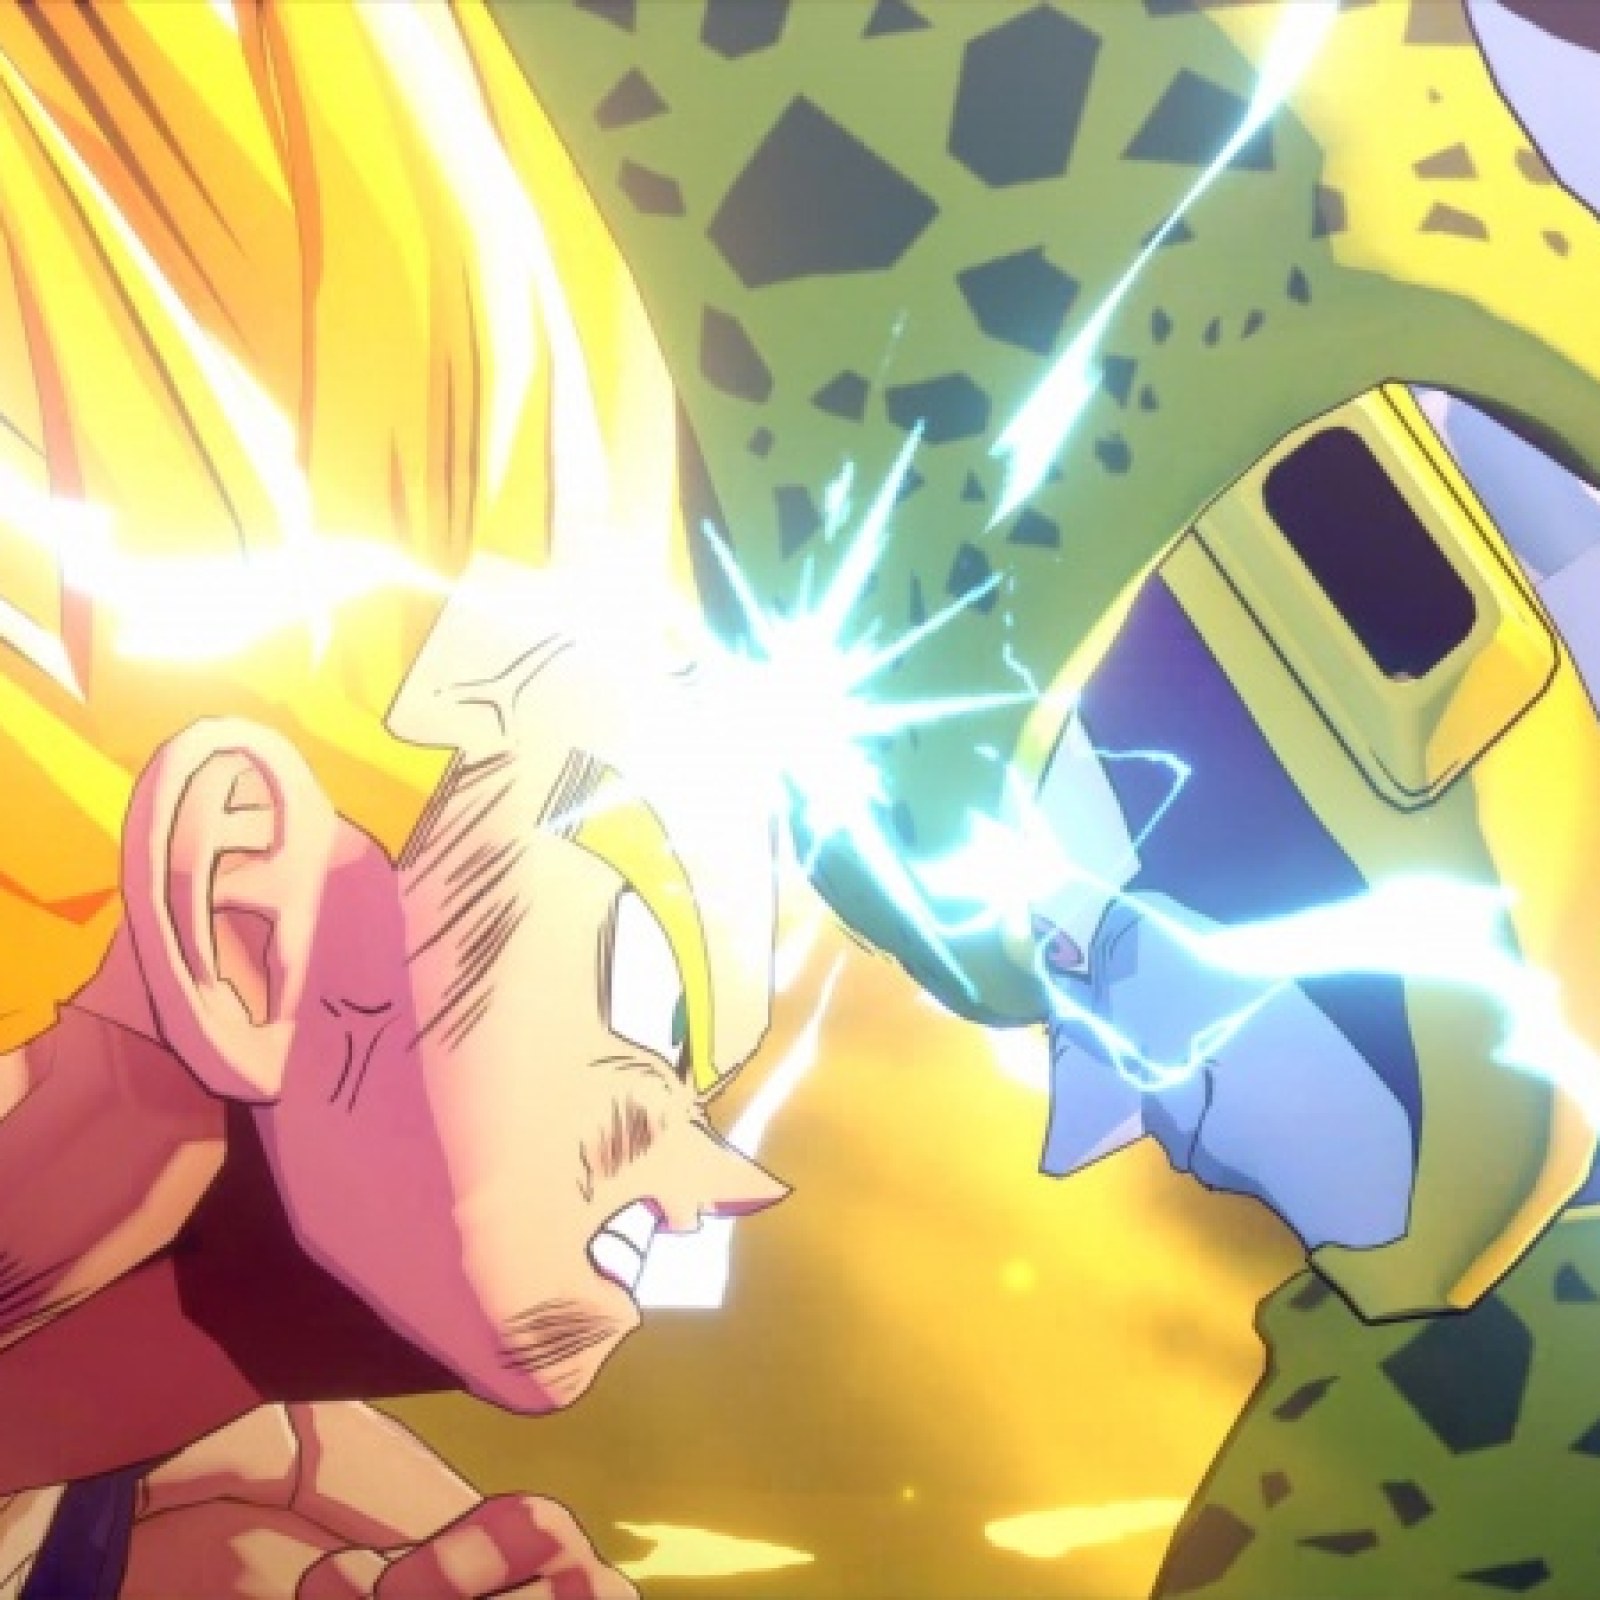 Dragon Ball Z Kakarot Trailer Shows Gohan Gameplay And Cell Saga